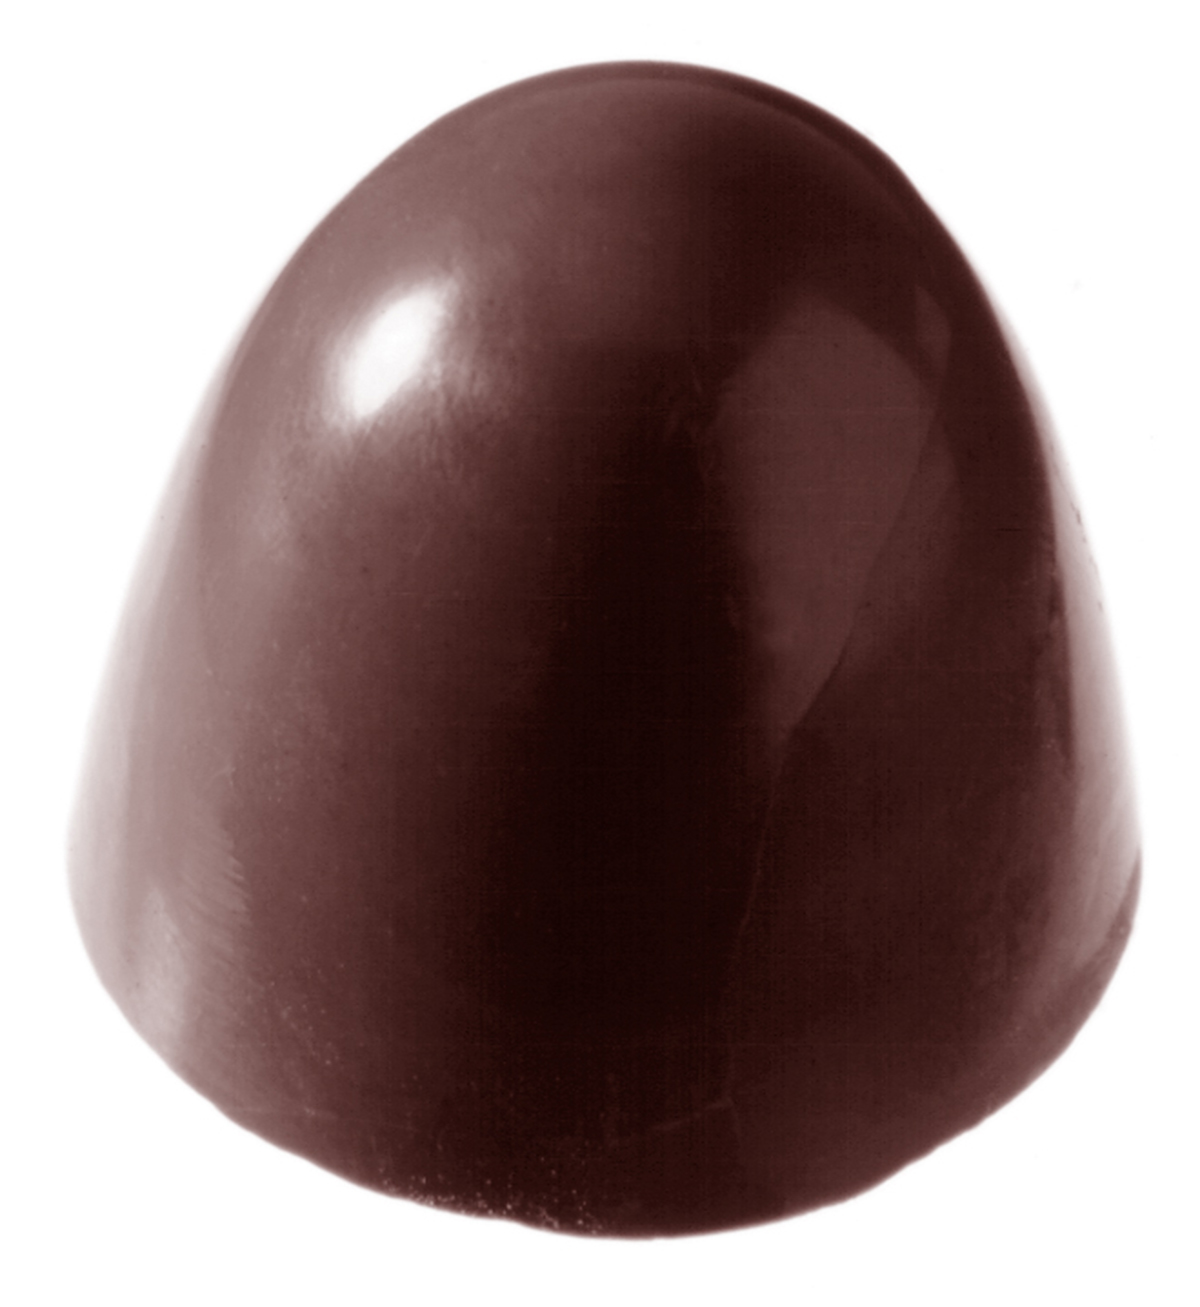 Billede af Professionel chokoladeform i polycarbonat - Flødebolle CW1291